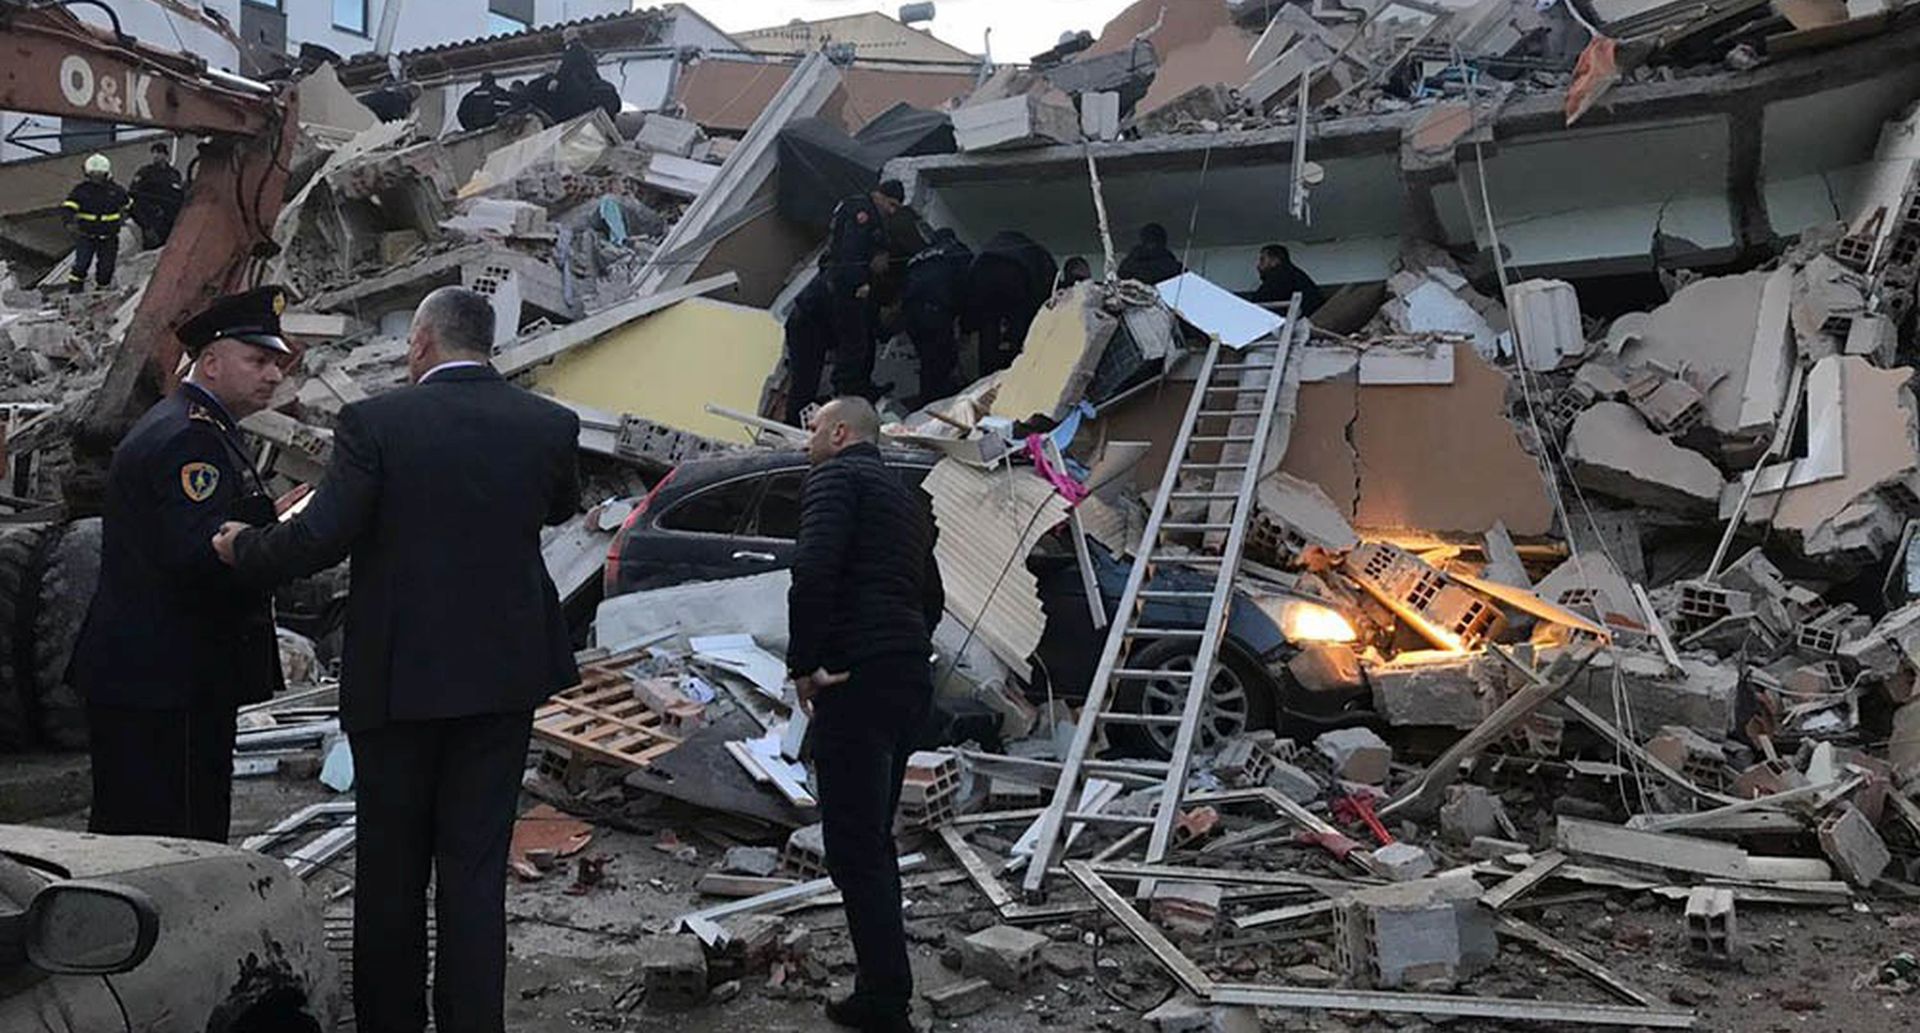 Tirana, 26.11.2019 - Najmanje èetvero ljudi poginulo je nakon to je najsnaniji potres u proteklih nekoliko desetljeæa pogodio glavni grad Albanije Tiranu i okolno podruèje u utorak, pri èemu se nekoliko zgrada uruilo a stanovnici ostali pod ruevinama.
foto HINA/ ATA/ ATSH/ ik